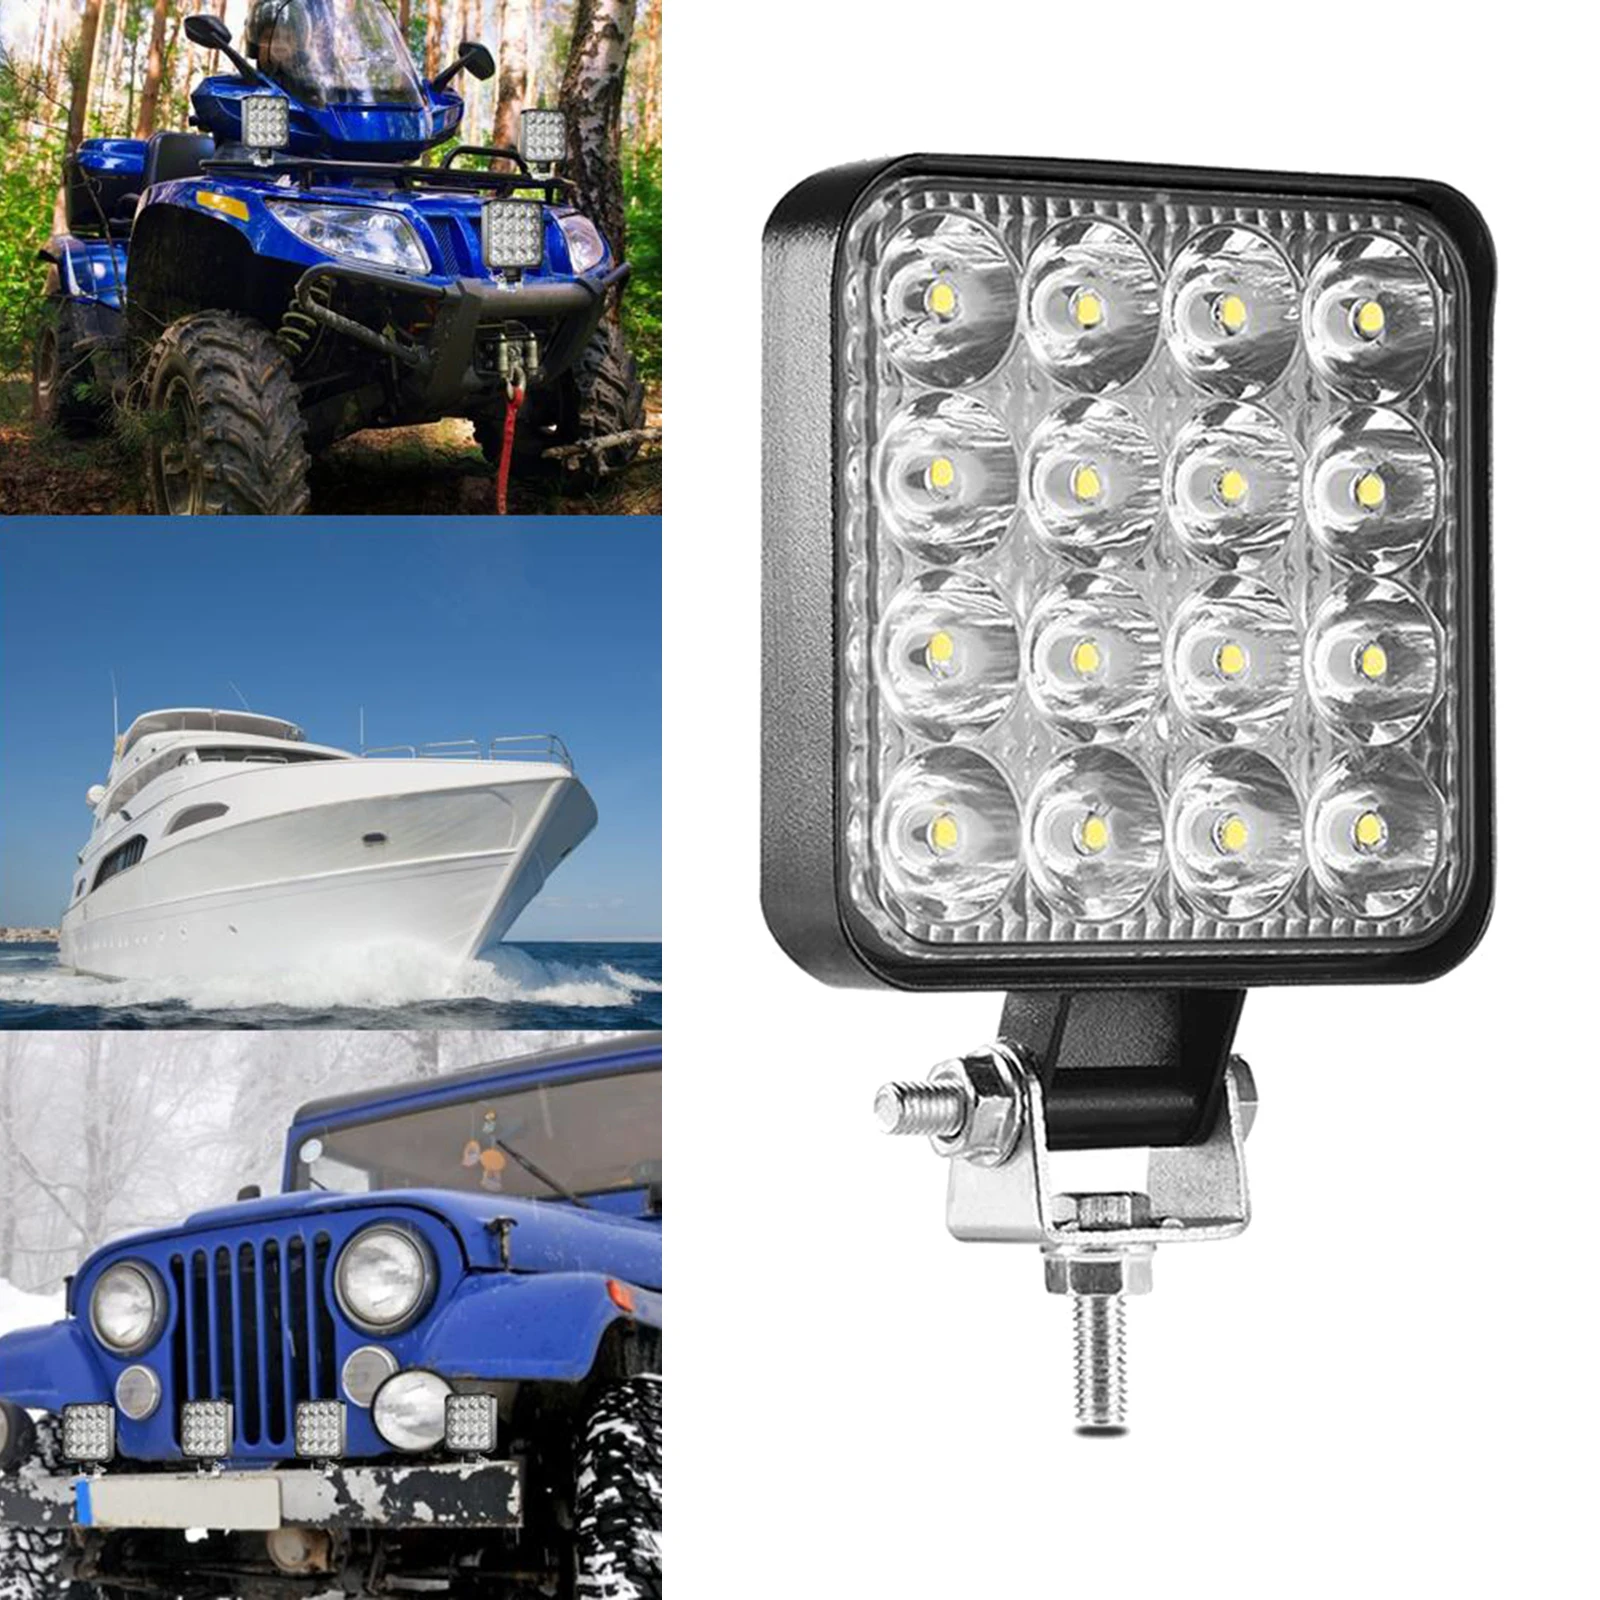 Led Light Bar 48W Led Bar Square Spotlight Off road LED Work Light 12V For Car Truck 4x4 Car SUV ATV Tractor Truck